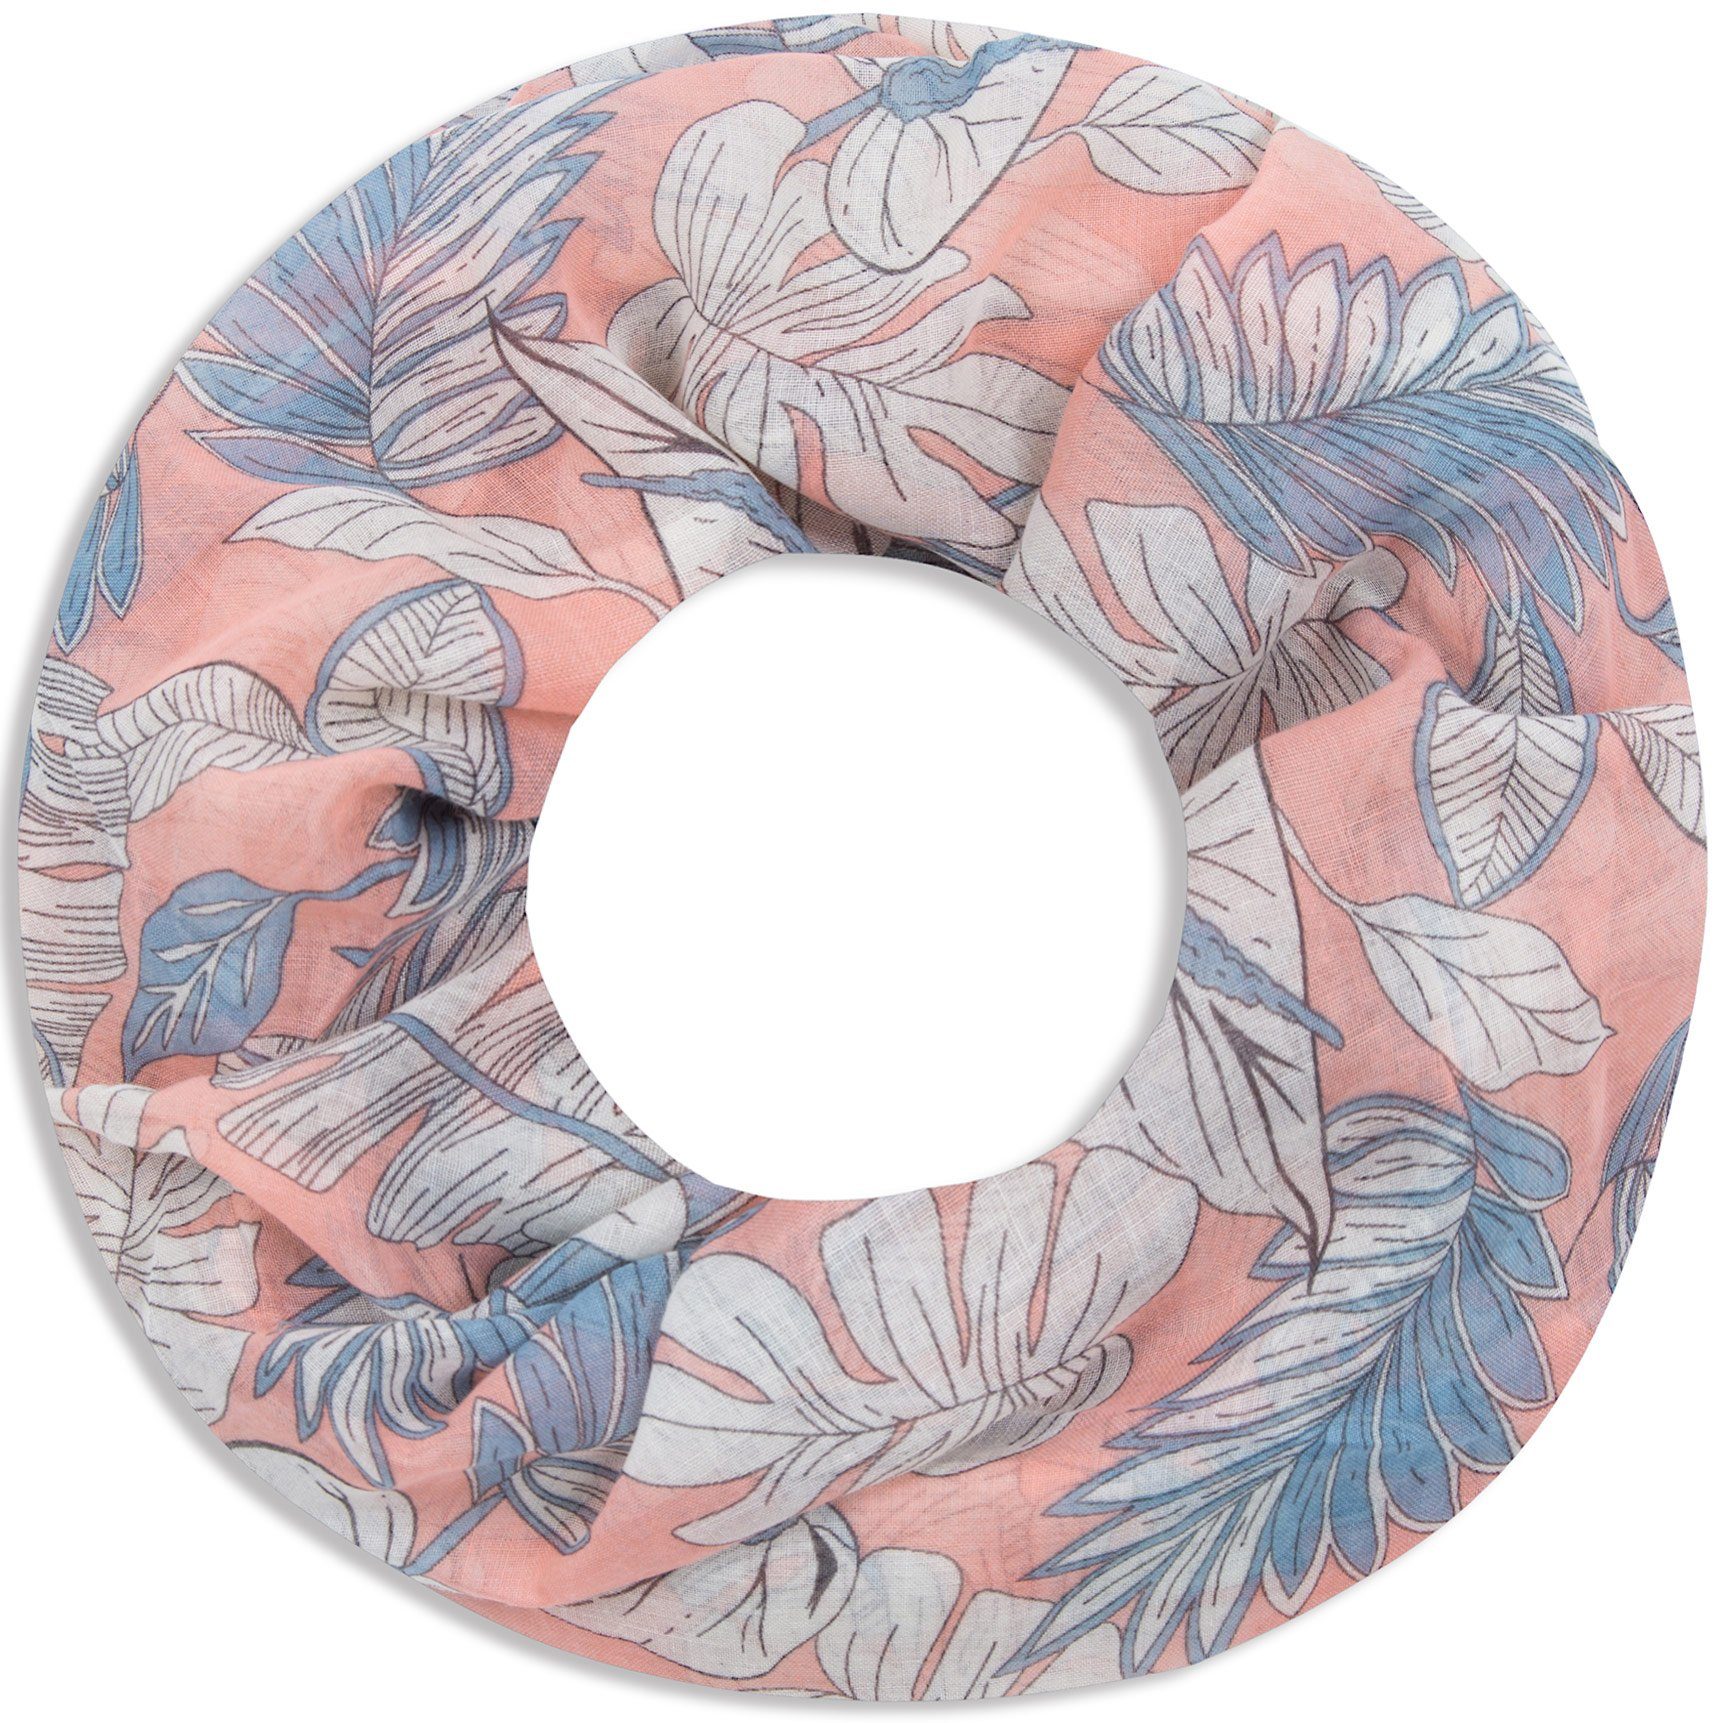 Faera Loop, Damen Schal weich und leicht florales Muster aus Blättern und Blüten Loopschal Rundschal rose